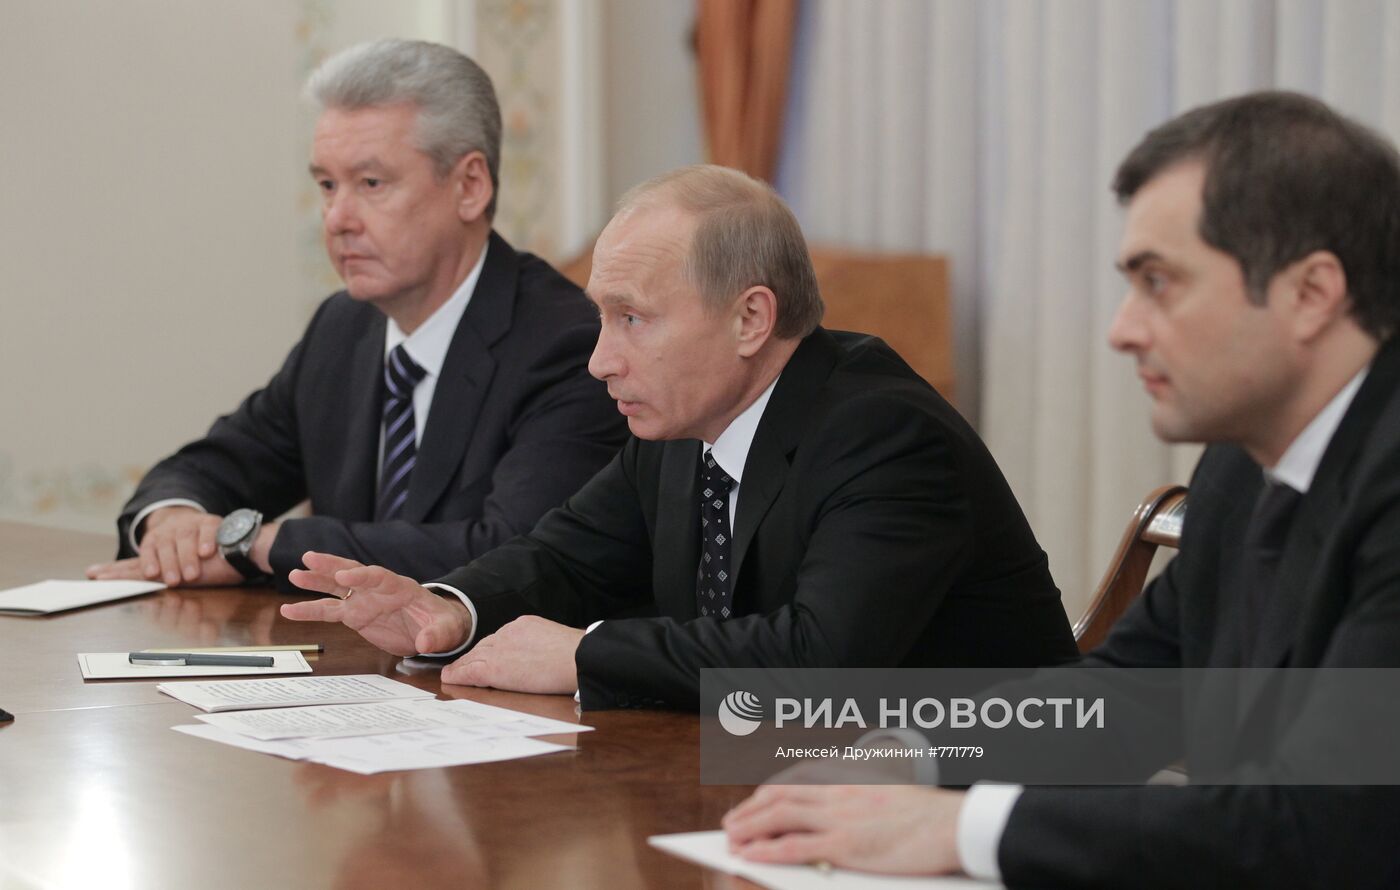 Встреча Владимир Путина с руководством партии "Единая Россия"